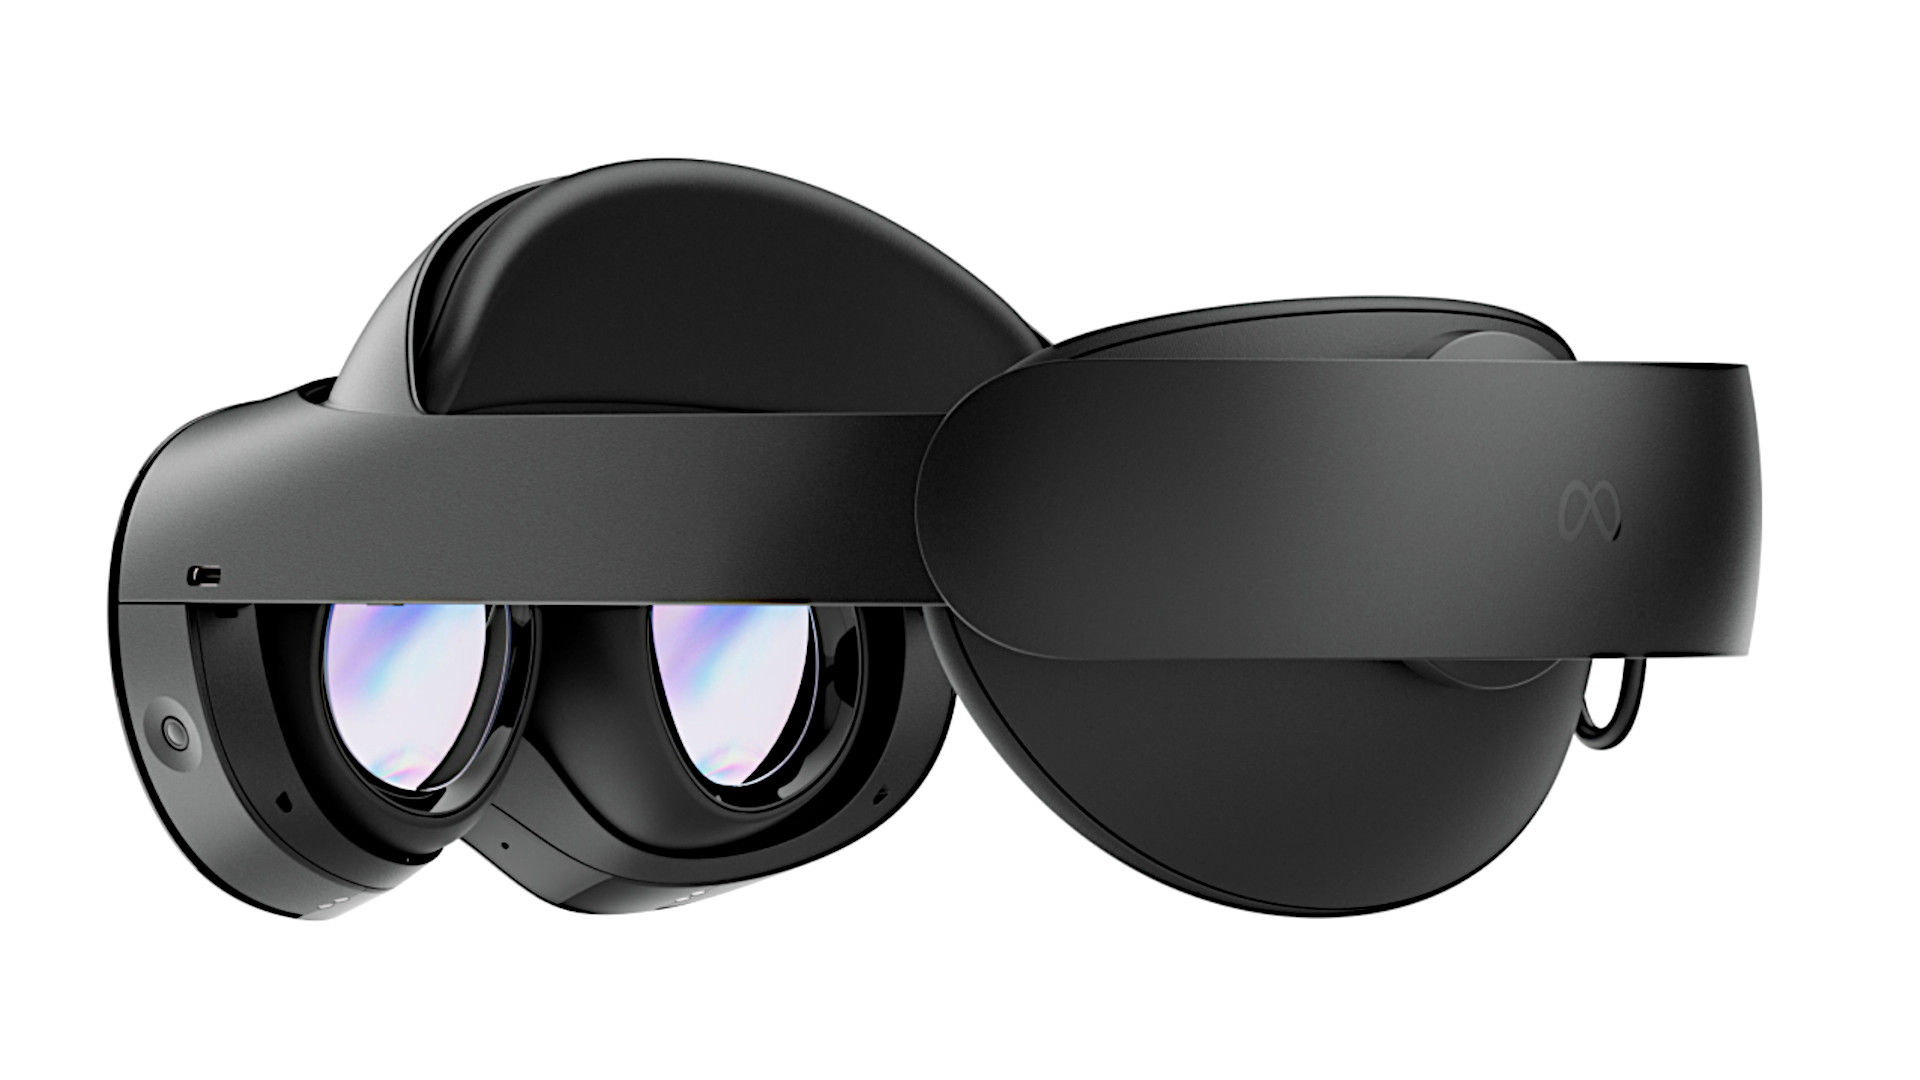 META Quest Pro Erscheinungsdatum: Eine Nebenansicht des VR-Headsets, die seine Objektive enthüllt